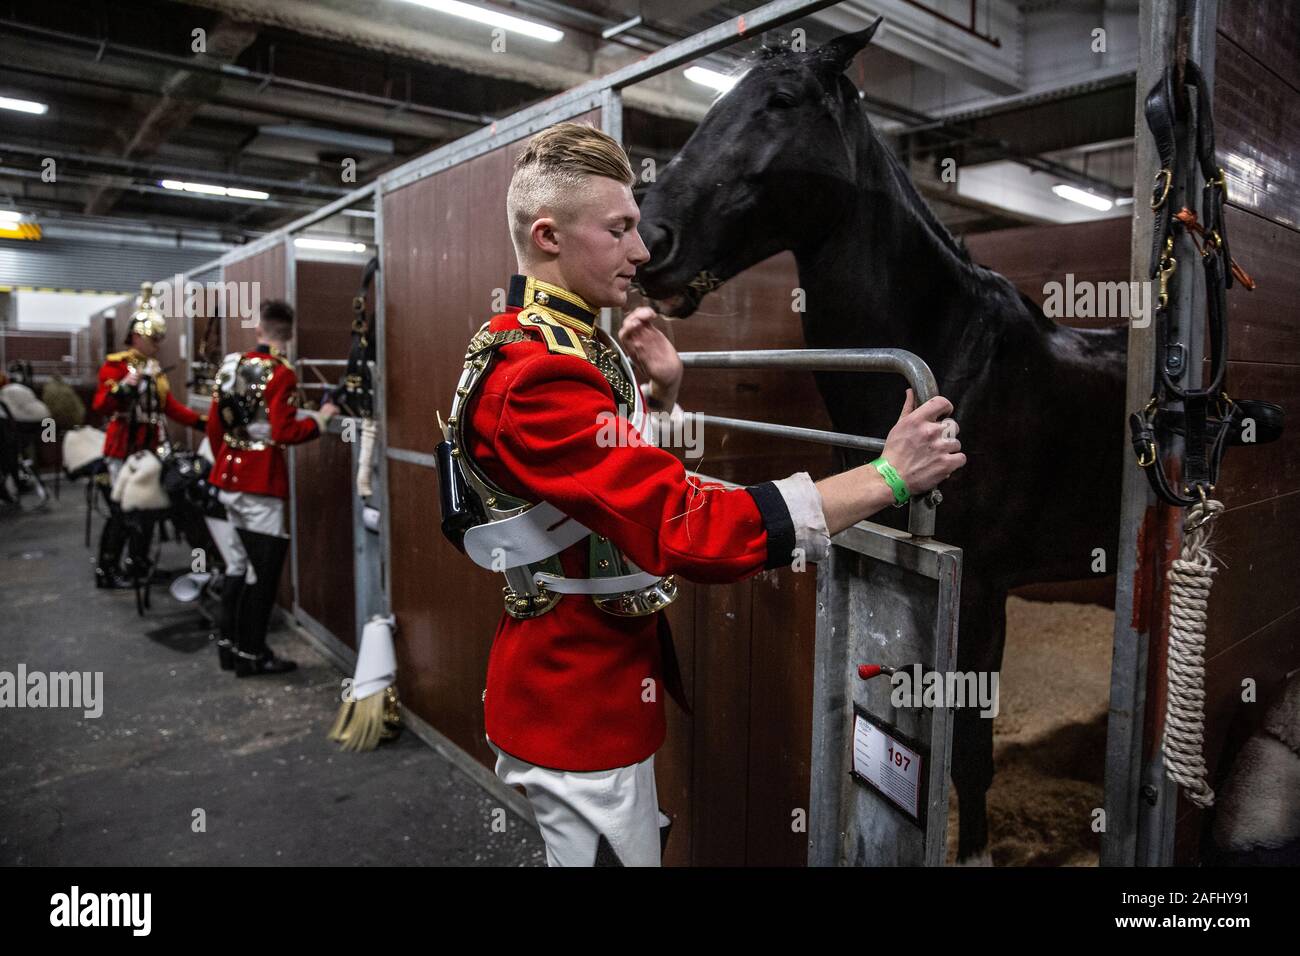 Dans les coulisses du Household Cavalry régiment monté avant leurs performances cette année à Olympie, la London International Horse Show, au Royaume-Uni. Banque D'Images